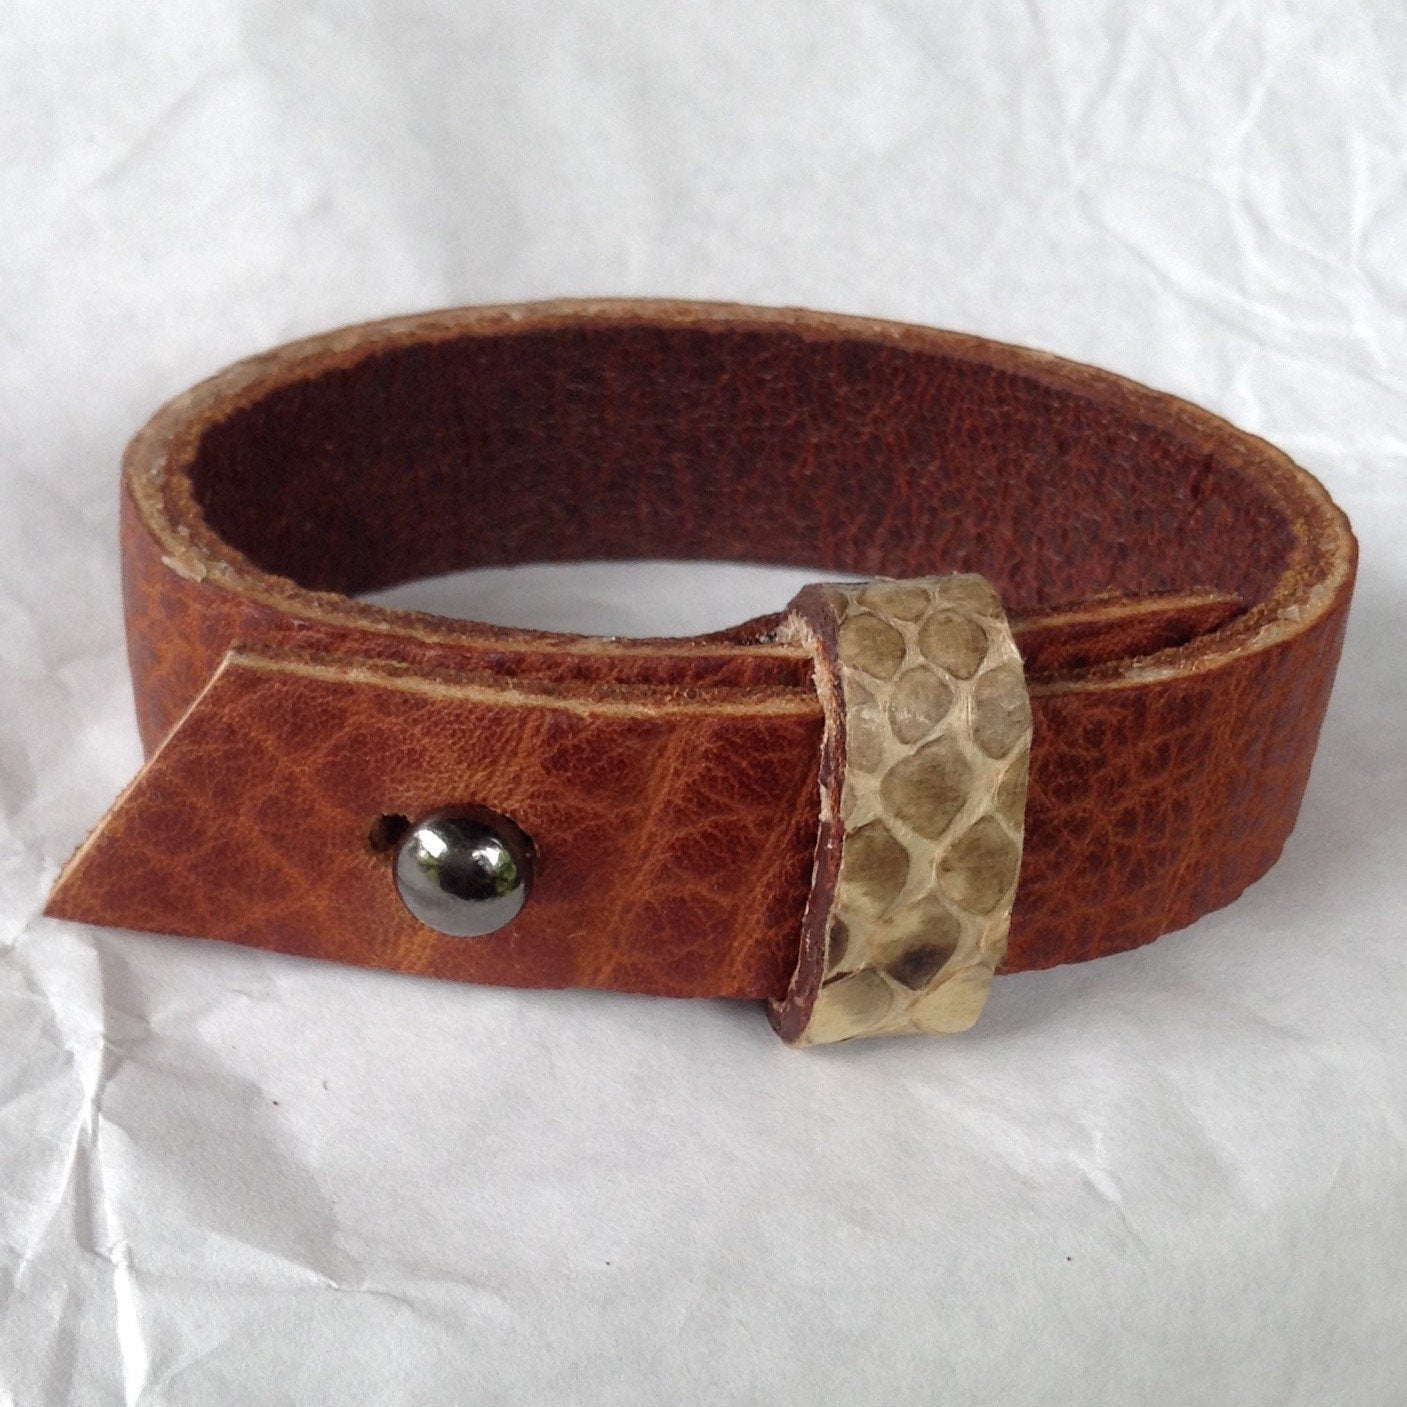 Belt cuff style Python strap, oiled buckskin lined leather bracelet.